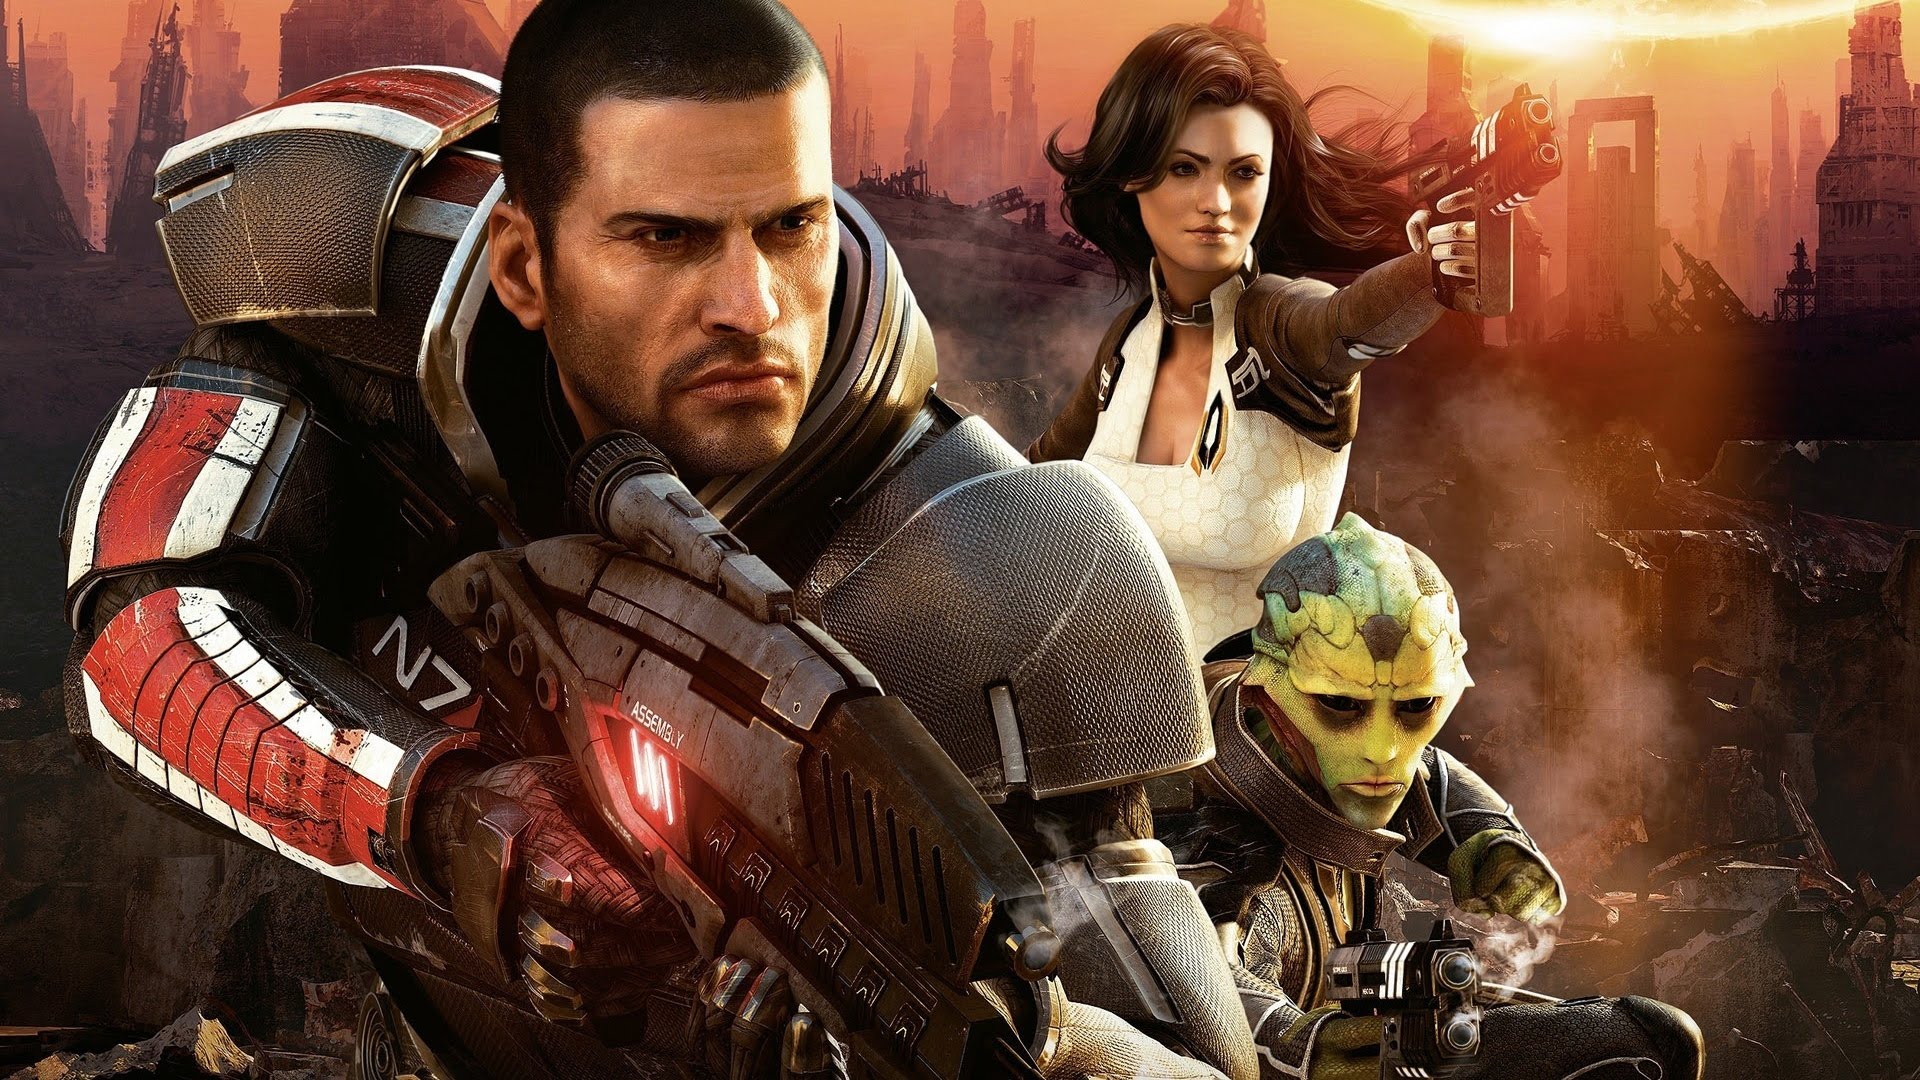 Mass Effect Trilogy Remaster учурда октябрга пландаштырылган, бирок кечиктирилиши мүмкүн - Ушак